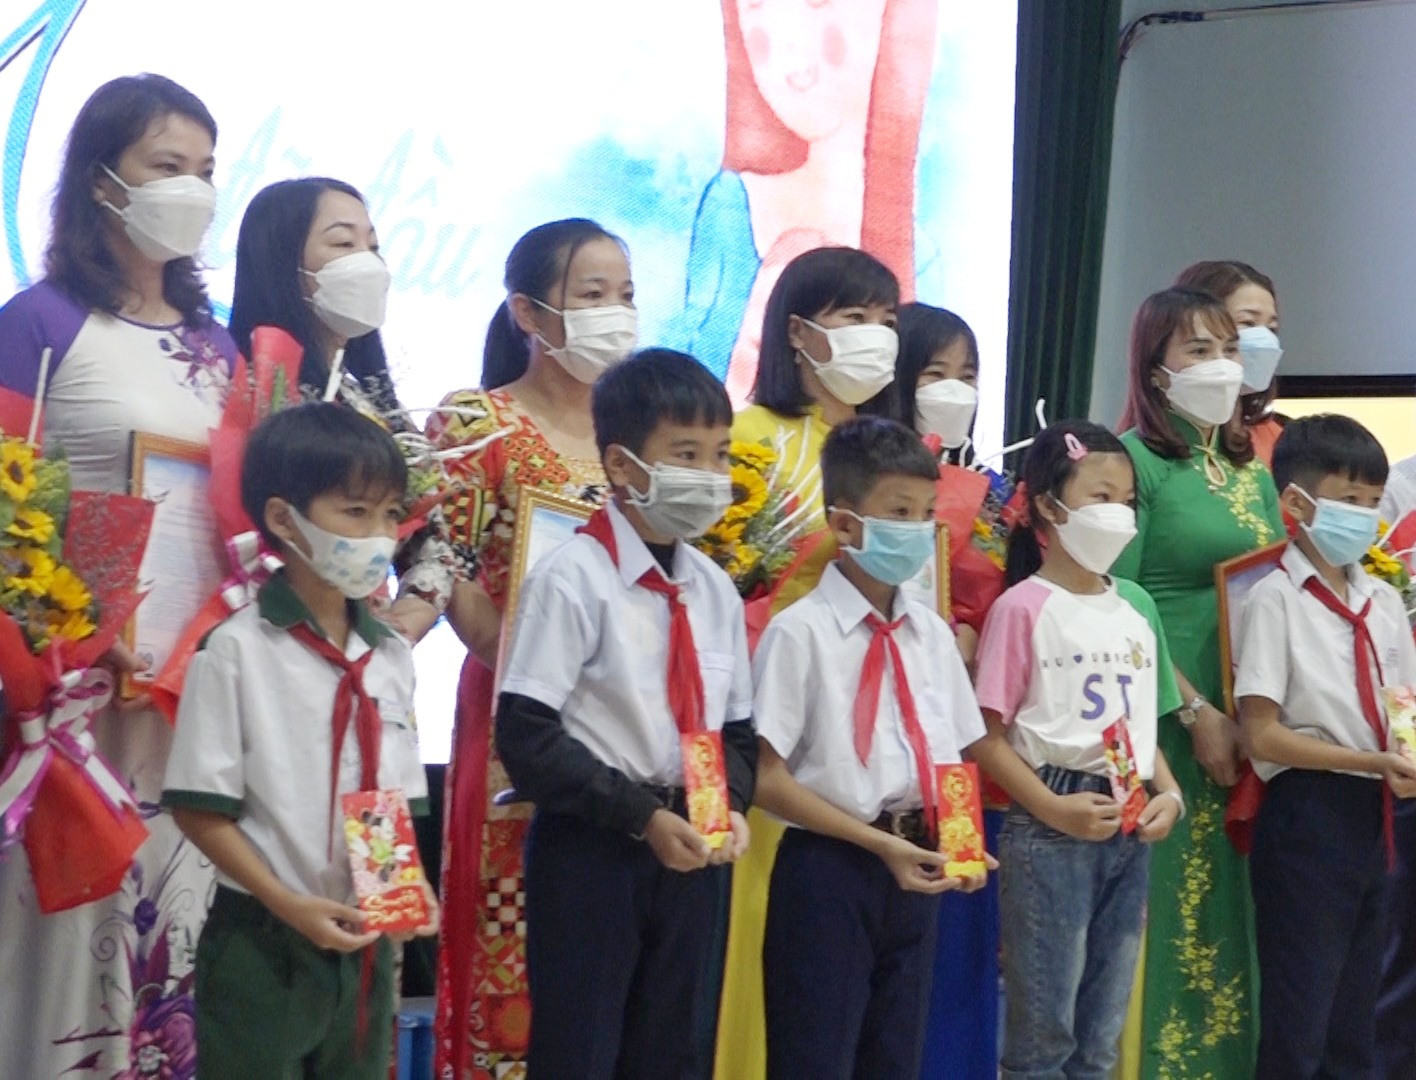 Chương trình “Mẹ đỡ đầu” được Hội LHPN huyện Thăng Bình triển khai từ tháng 12.2021 với 58 trẻ em được hỗ trợ. Ảnh: T.T